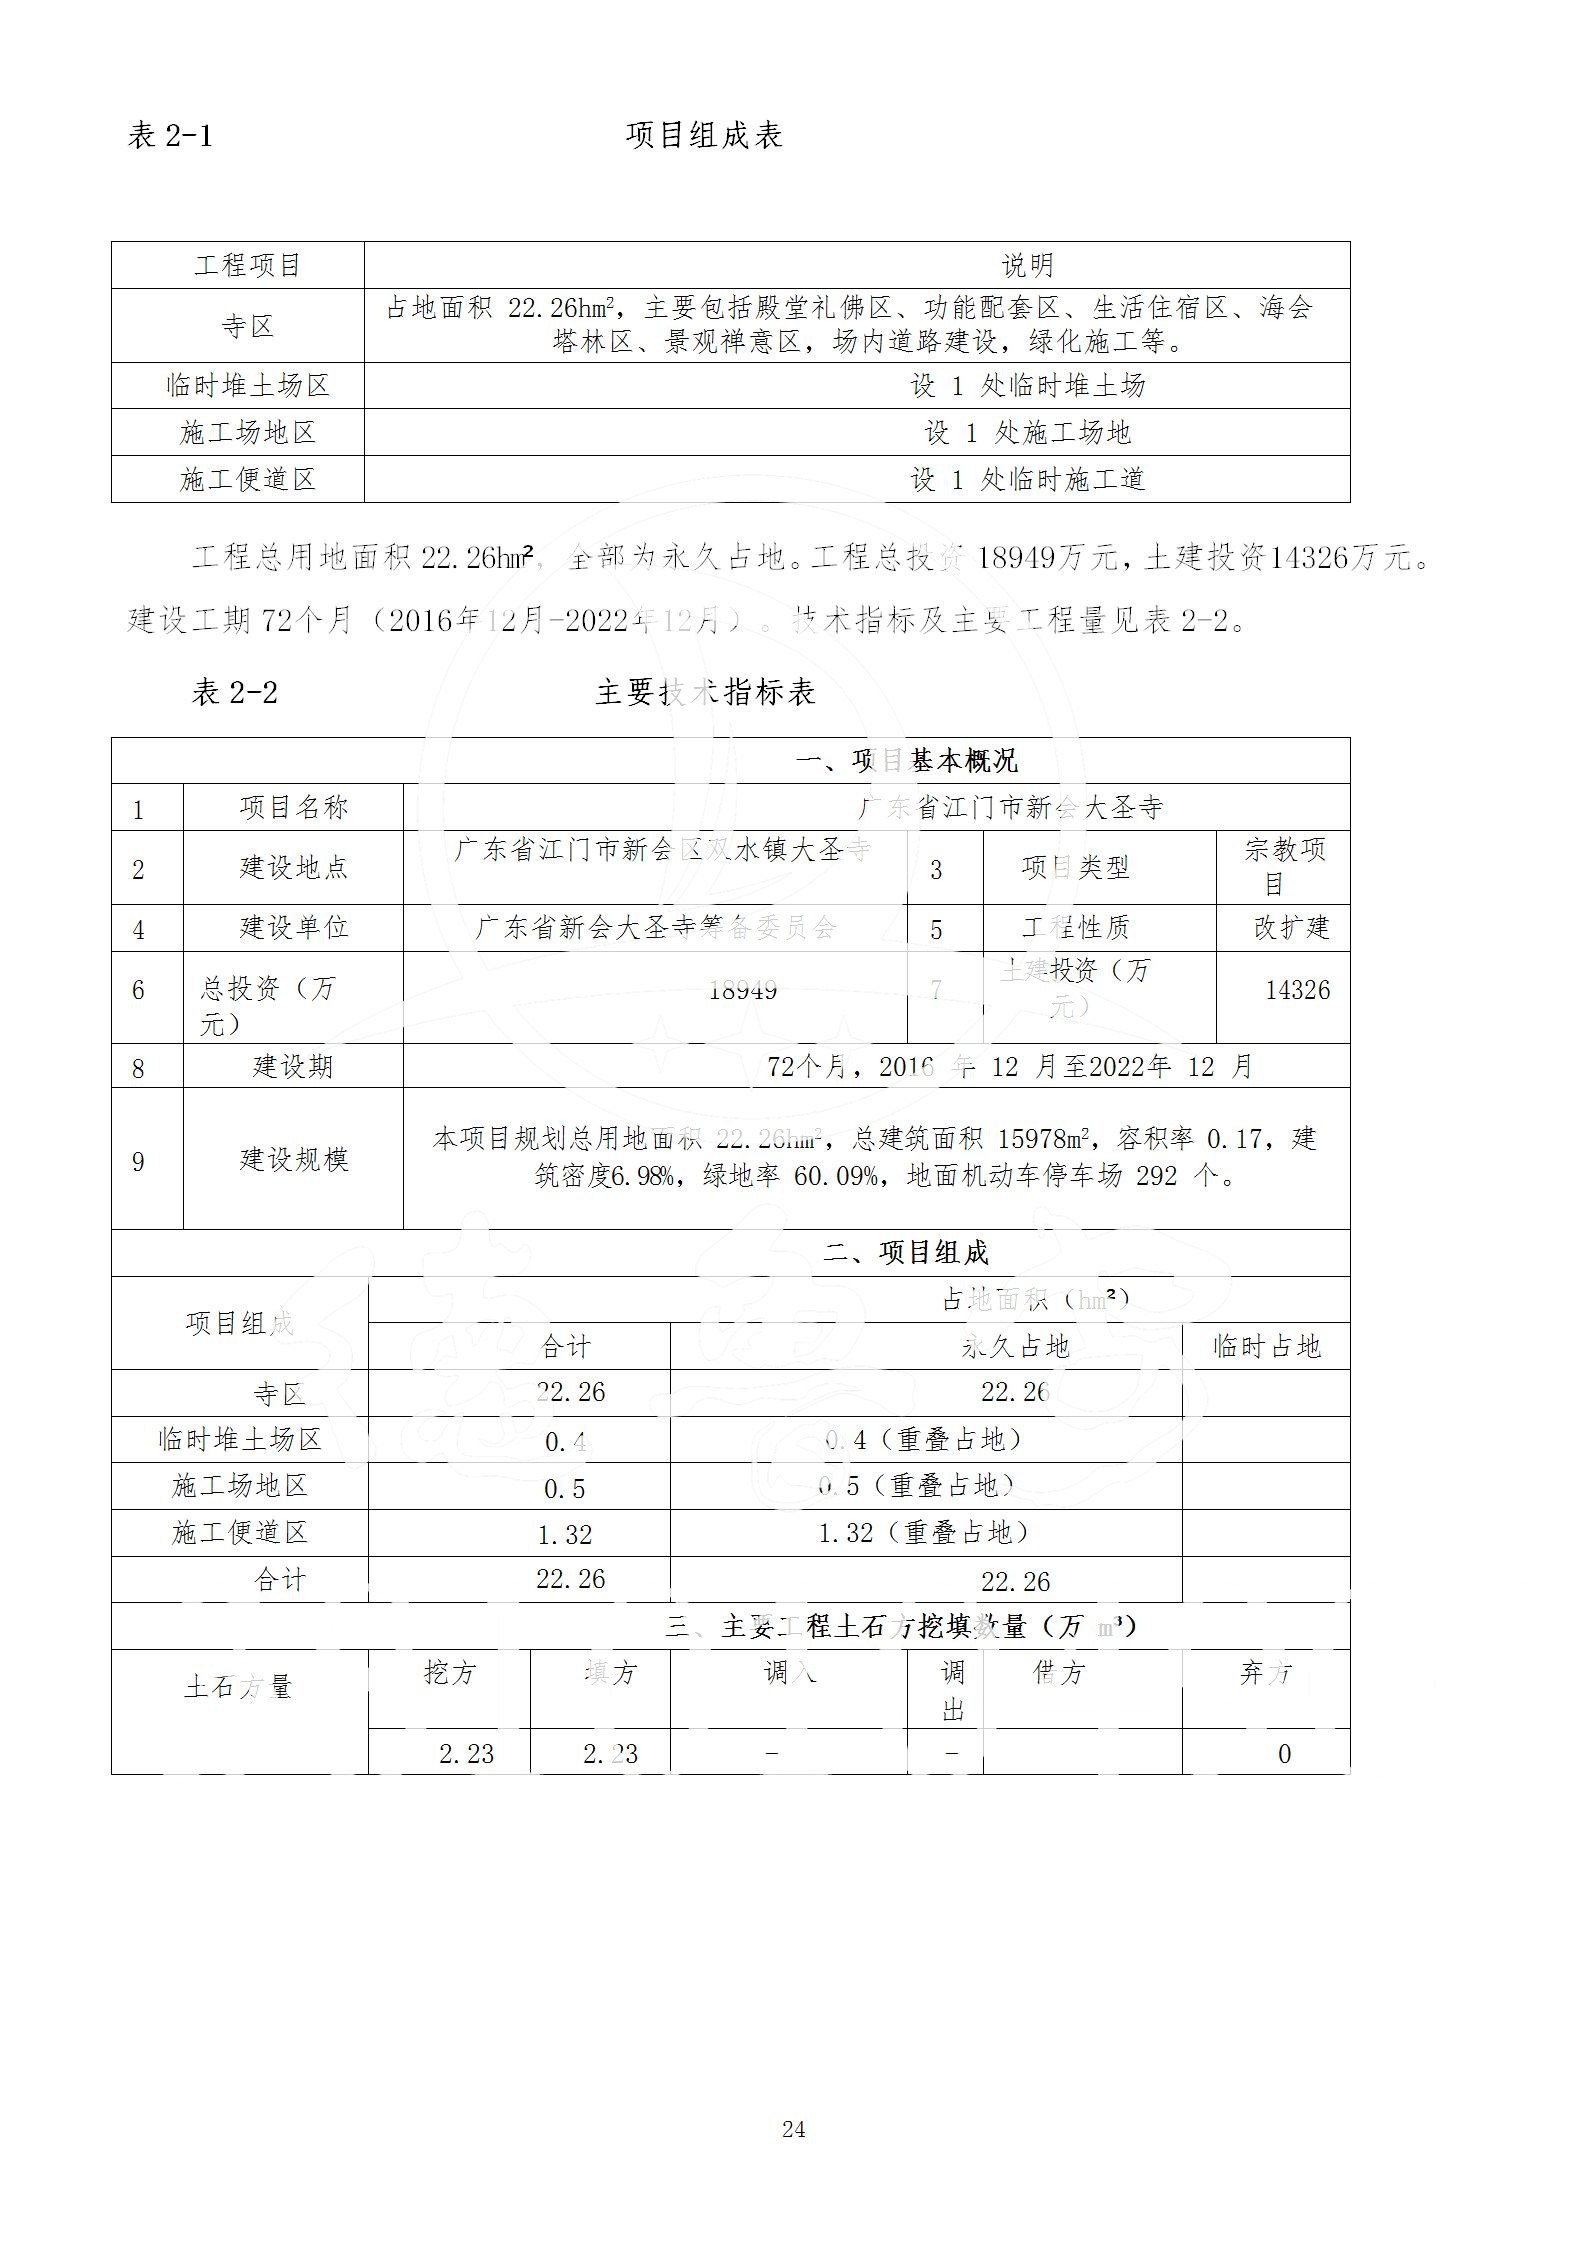 广东省大圣寺水土保持报告  修改稿5_24.jpg